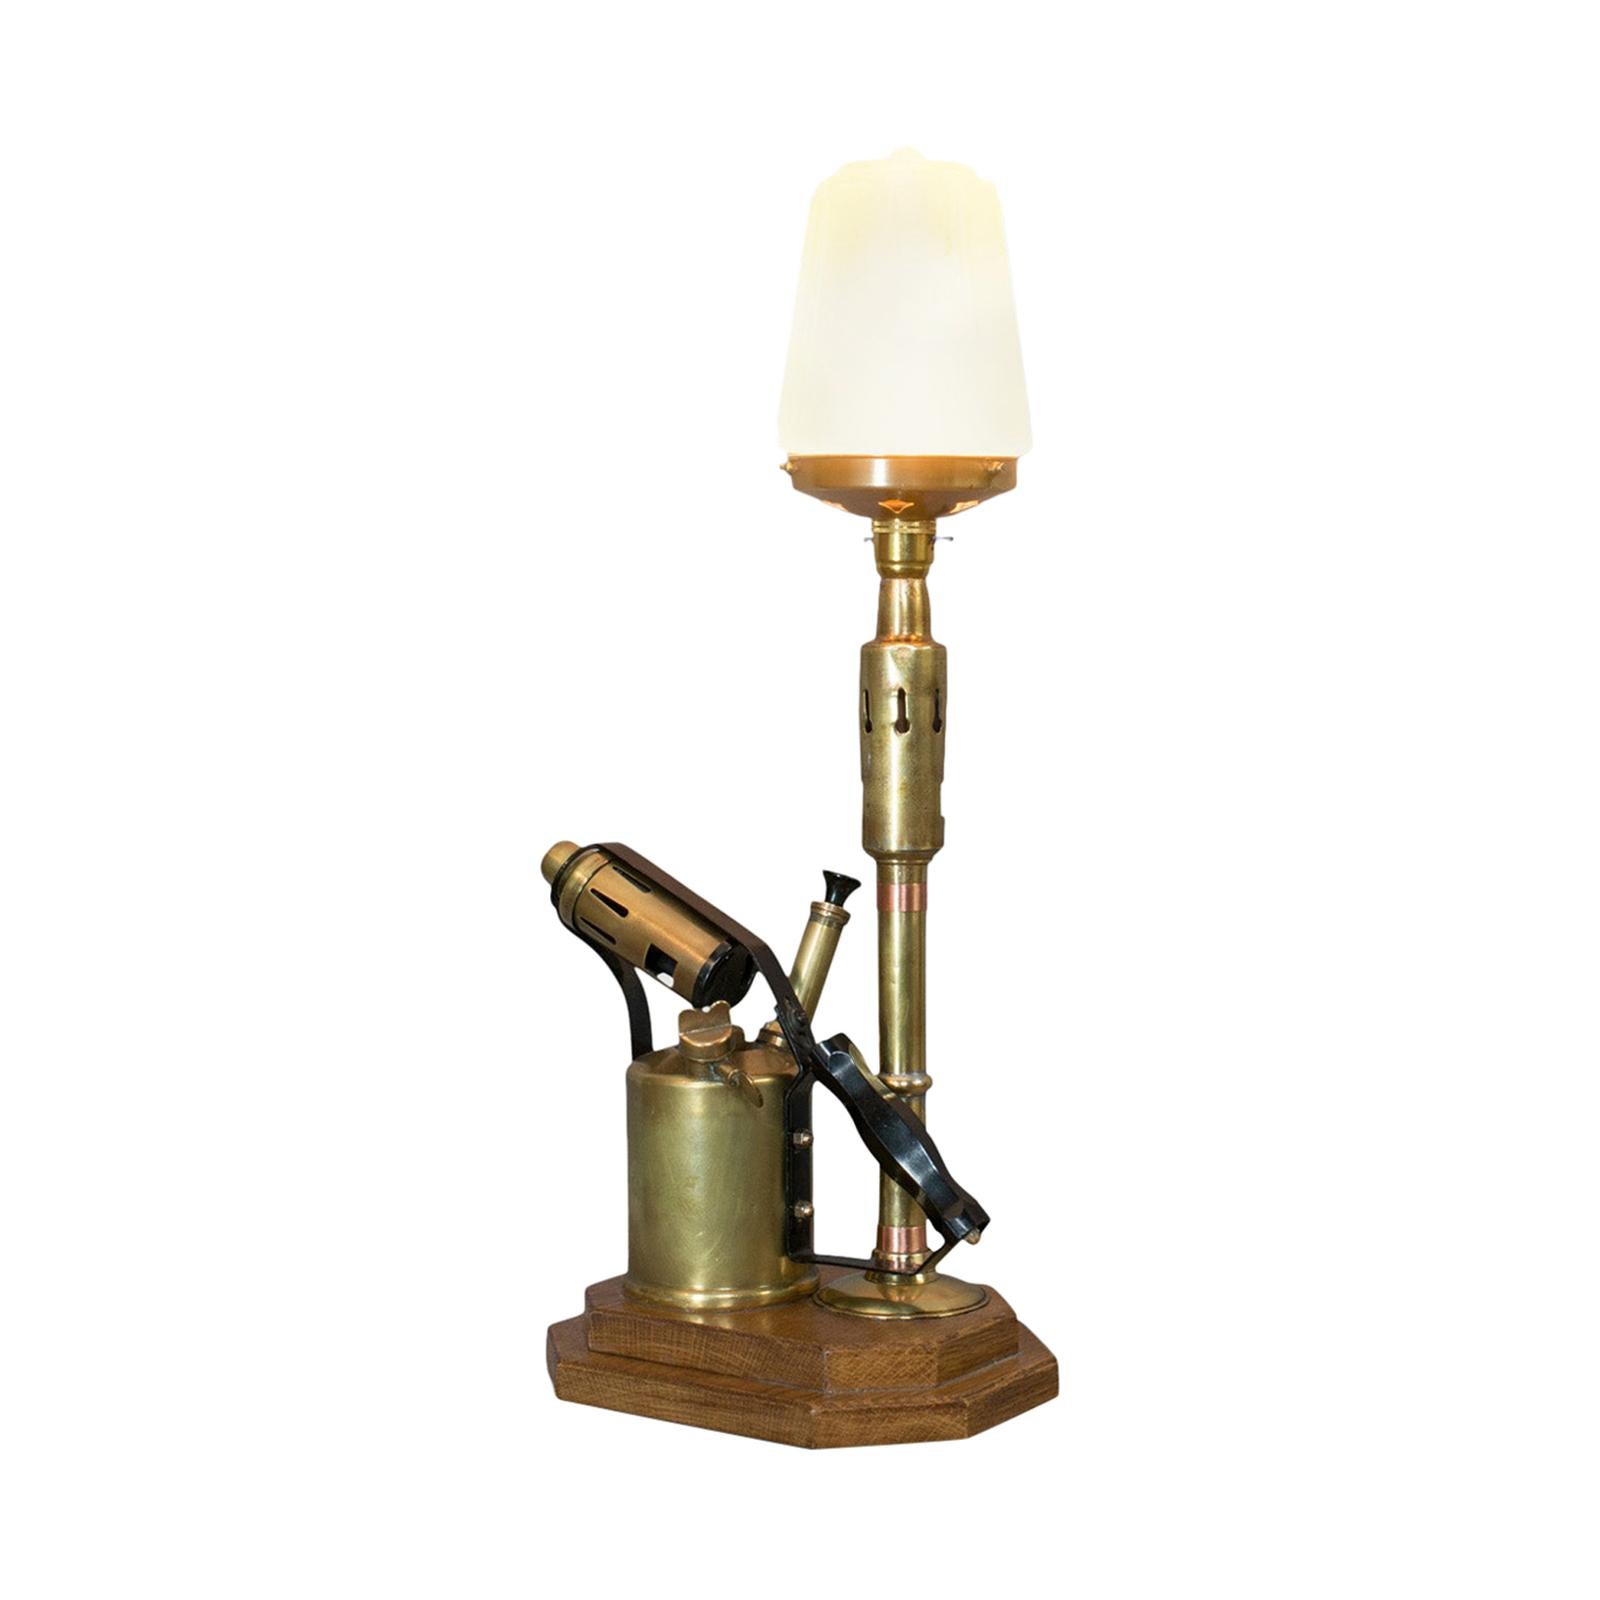 Vieille lampe décorative:: anglais:: laiton:: chalumeau:: lumière:: abat-jour:: base de chêne